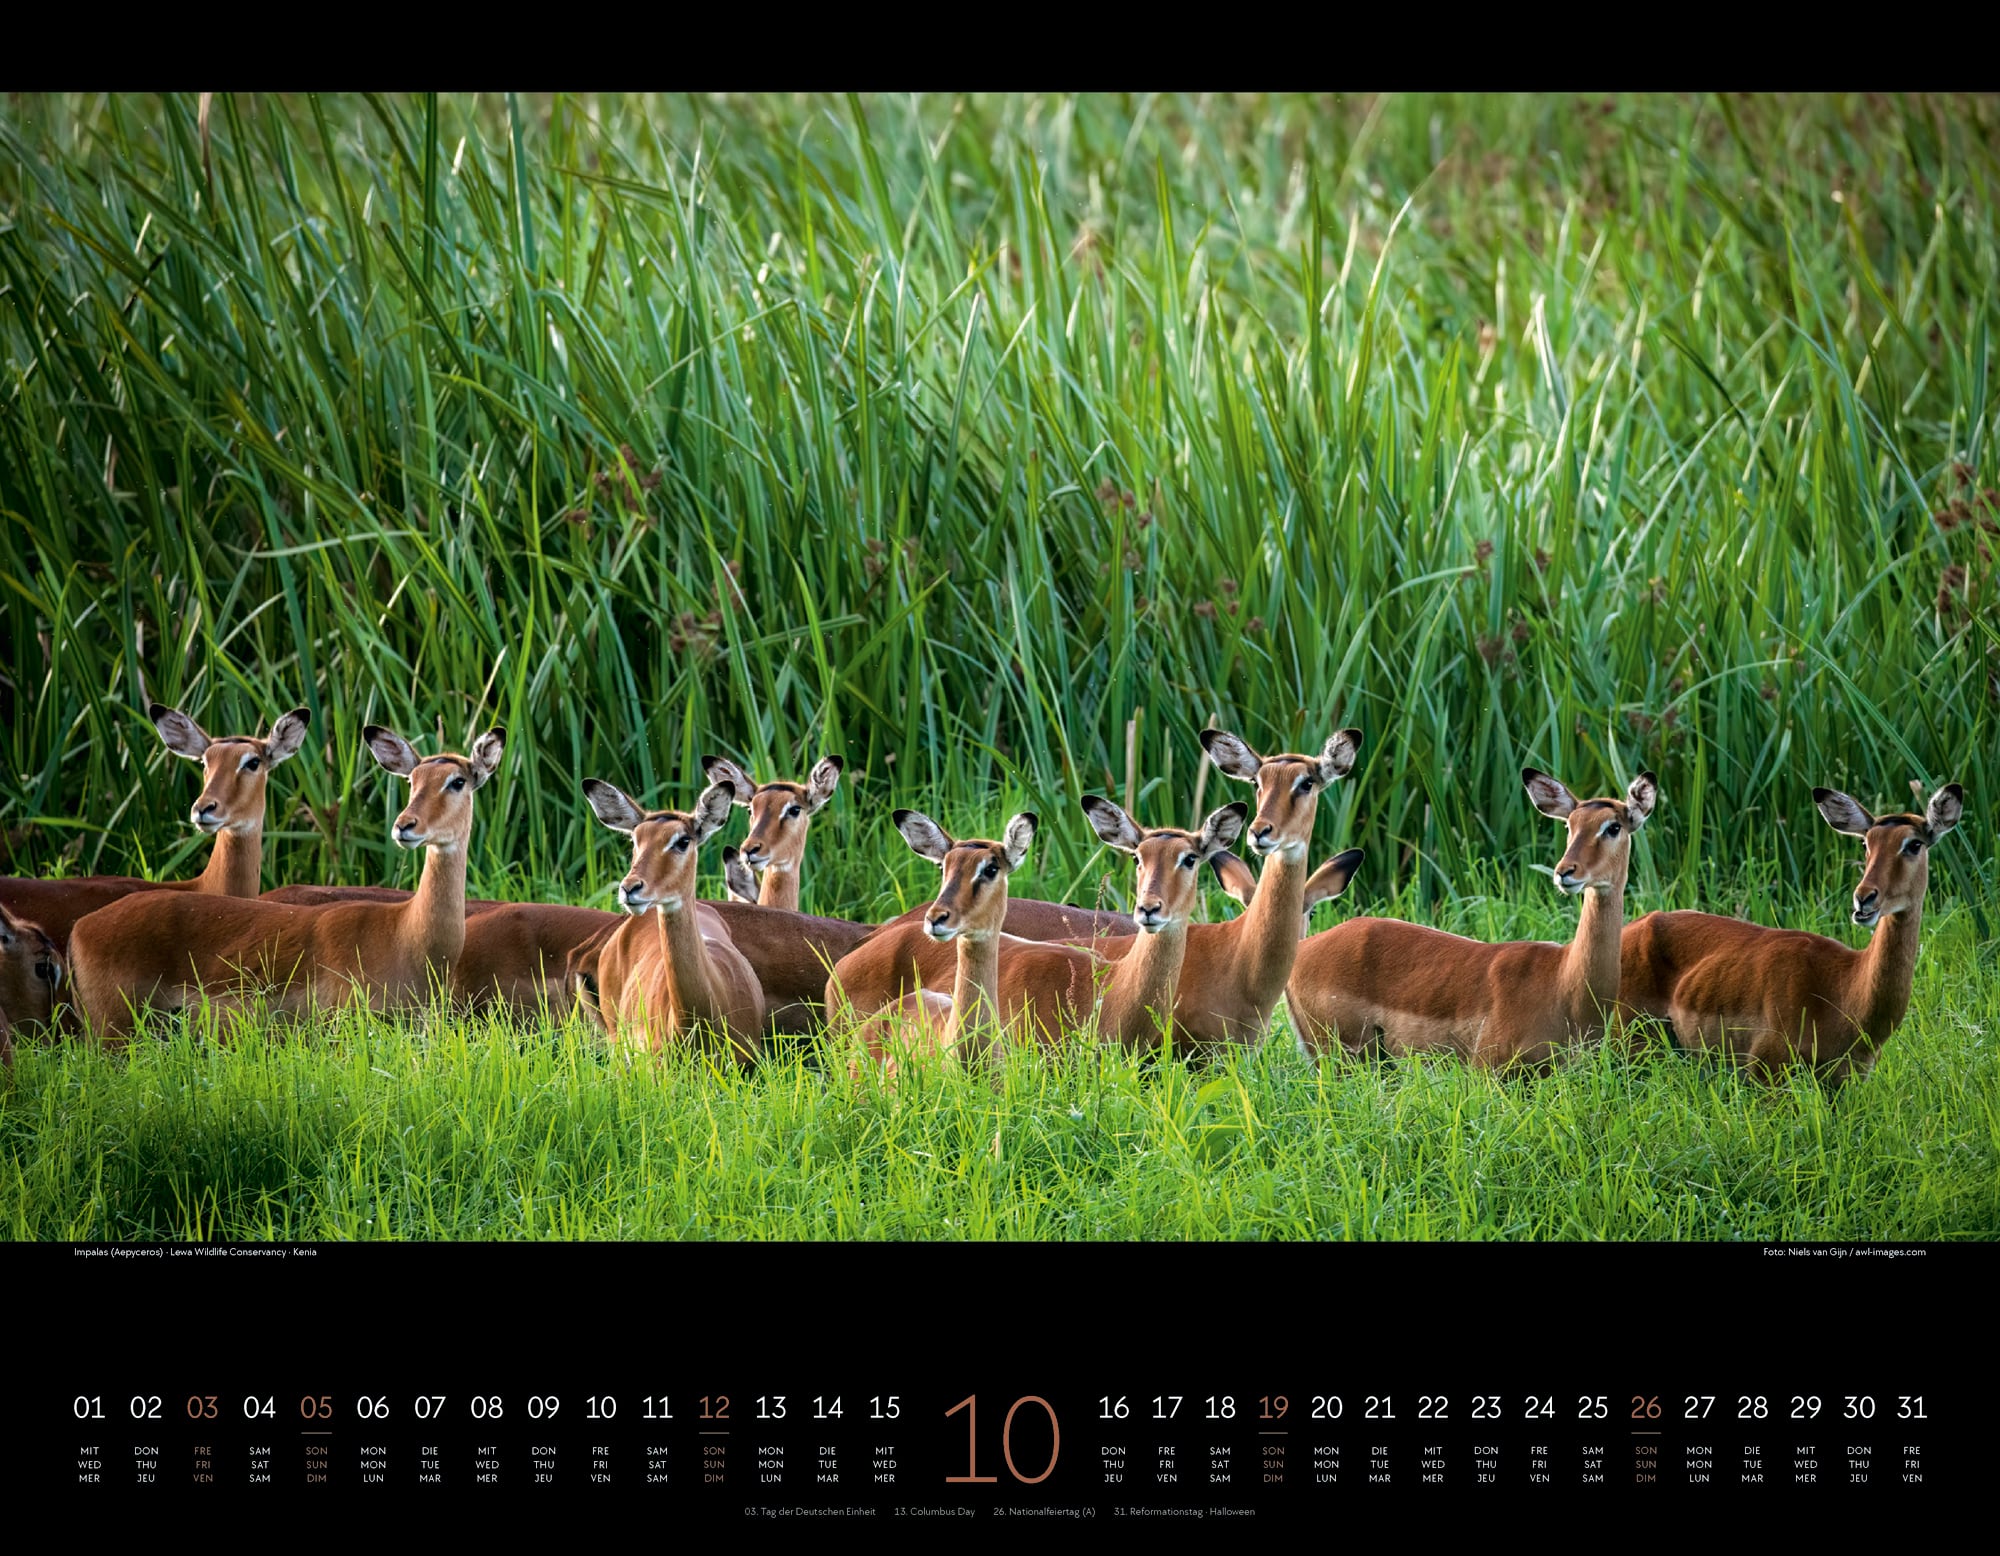 Ackermann Calendar Wild Africa 2025 - Inside View 10